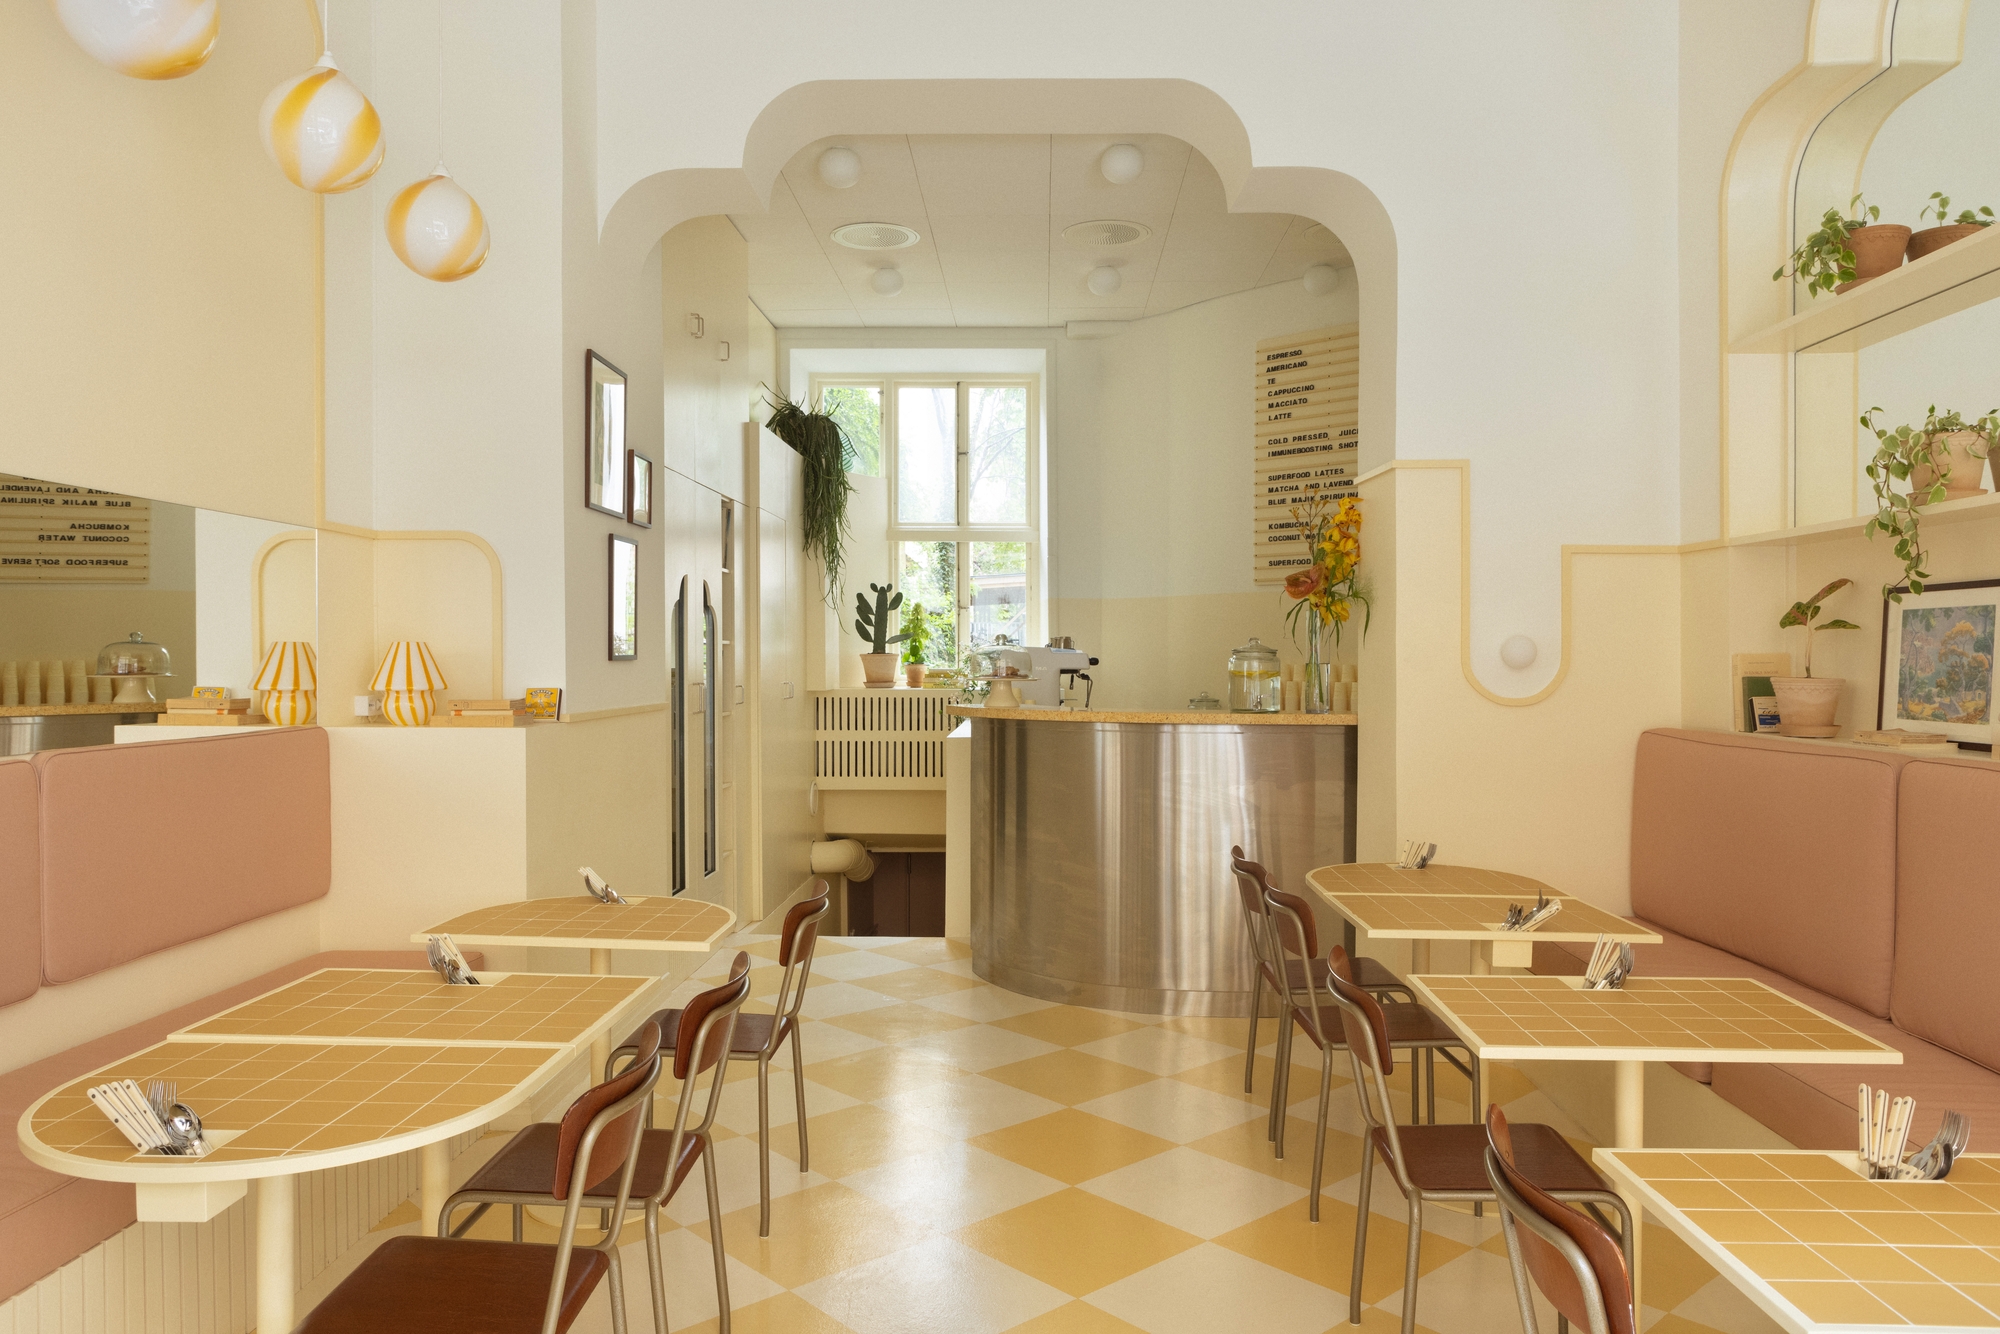 图片[2]|Banacado咖啡馆|ART-Arrakis | 建筑室内设计的创新与灵感